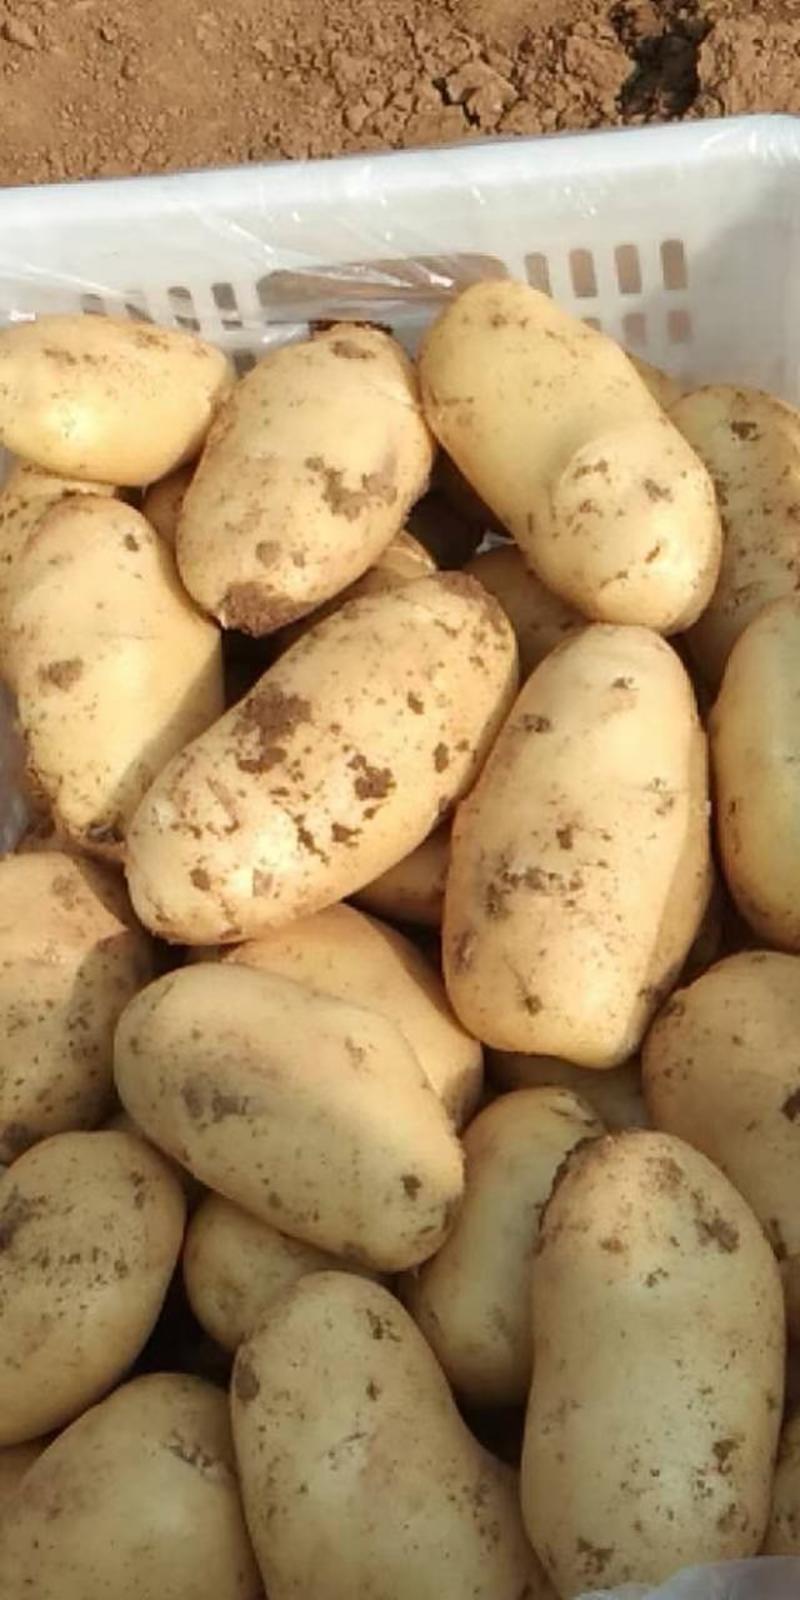 荷兰十五土豆，长年大量供应全国，质量保障，支持全国发货！